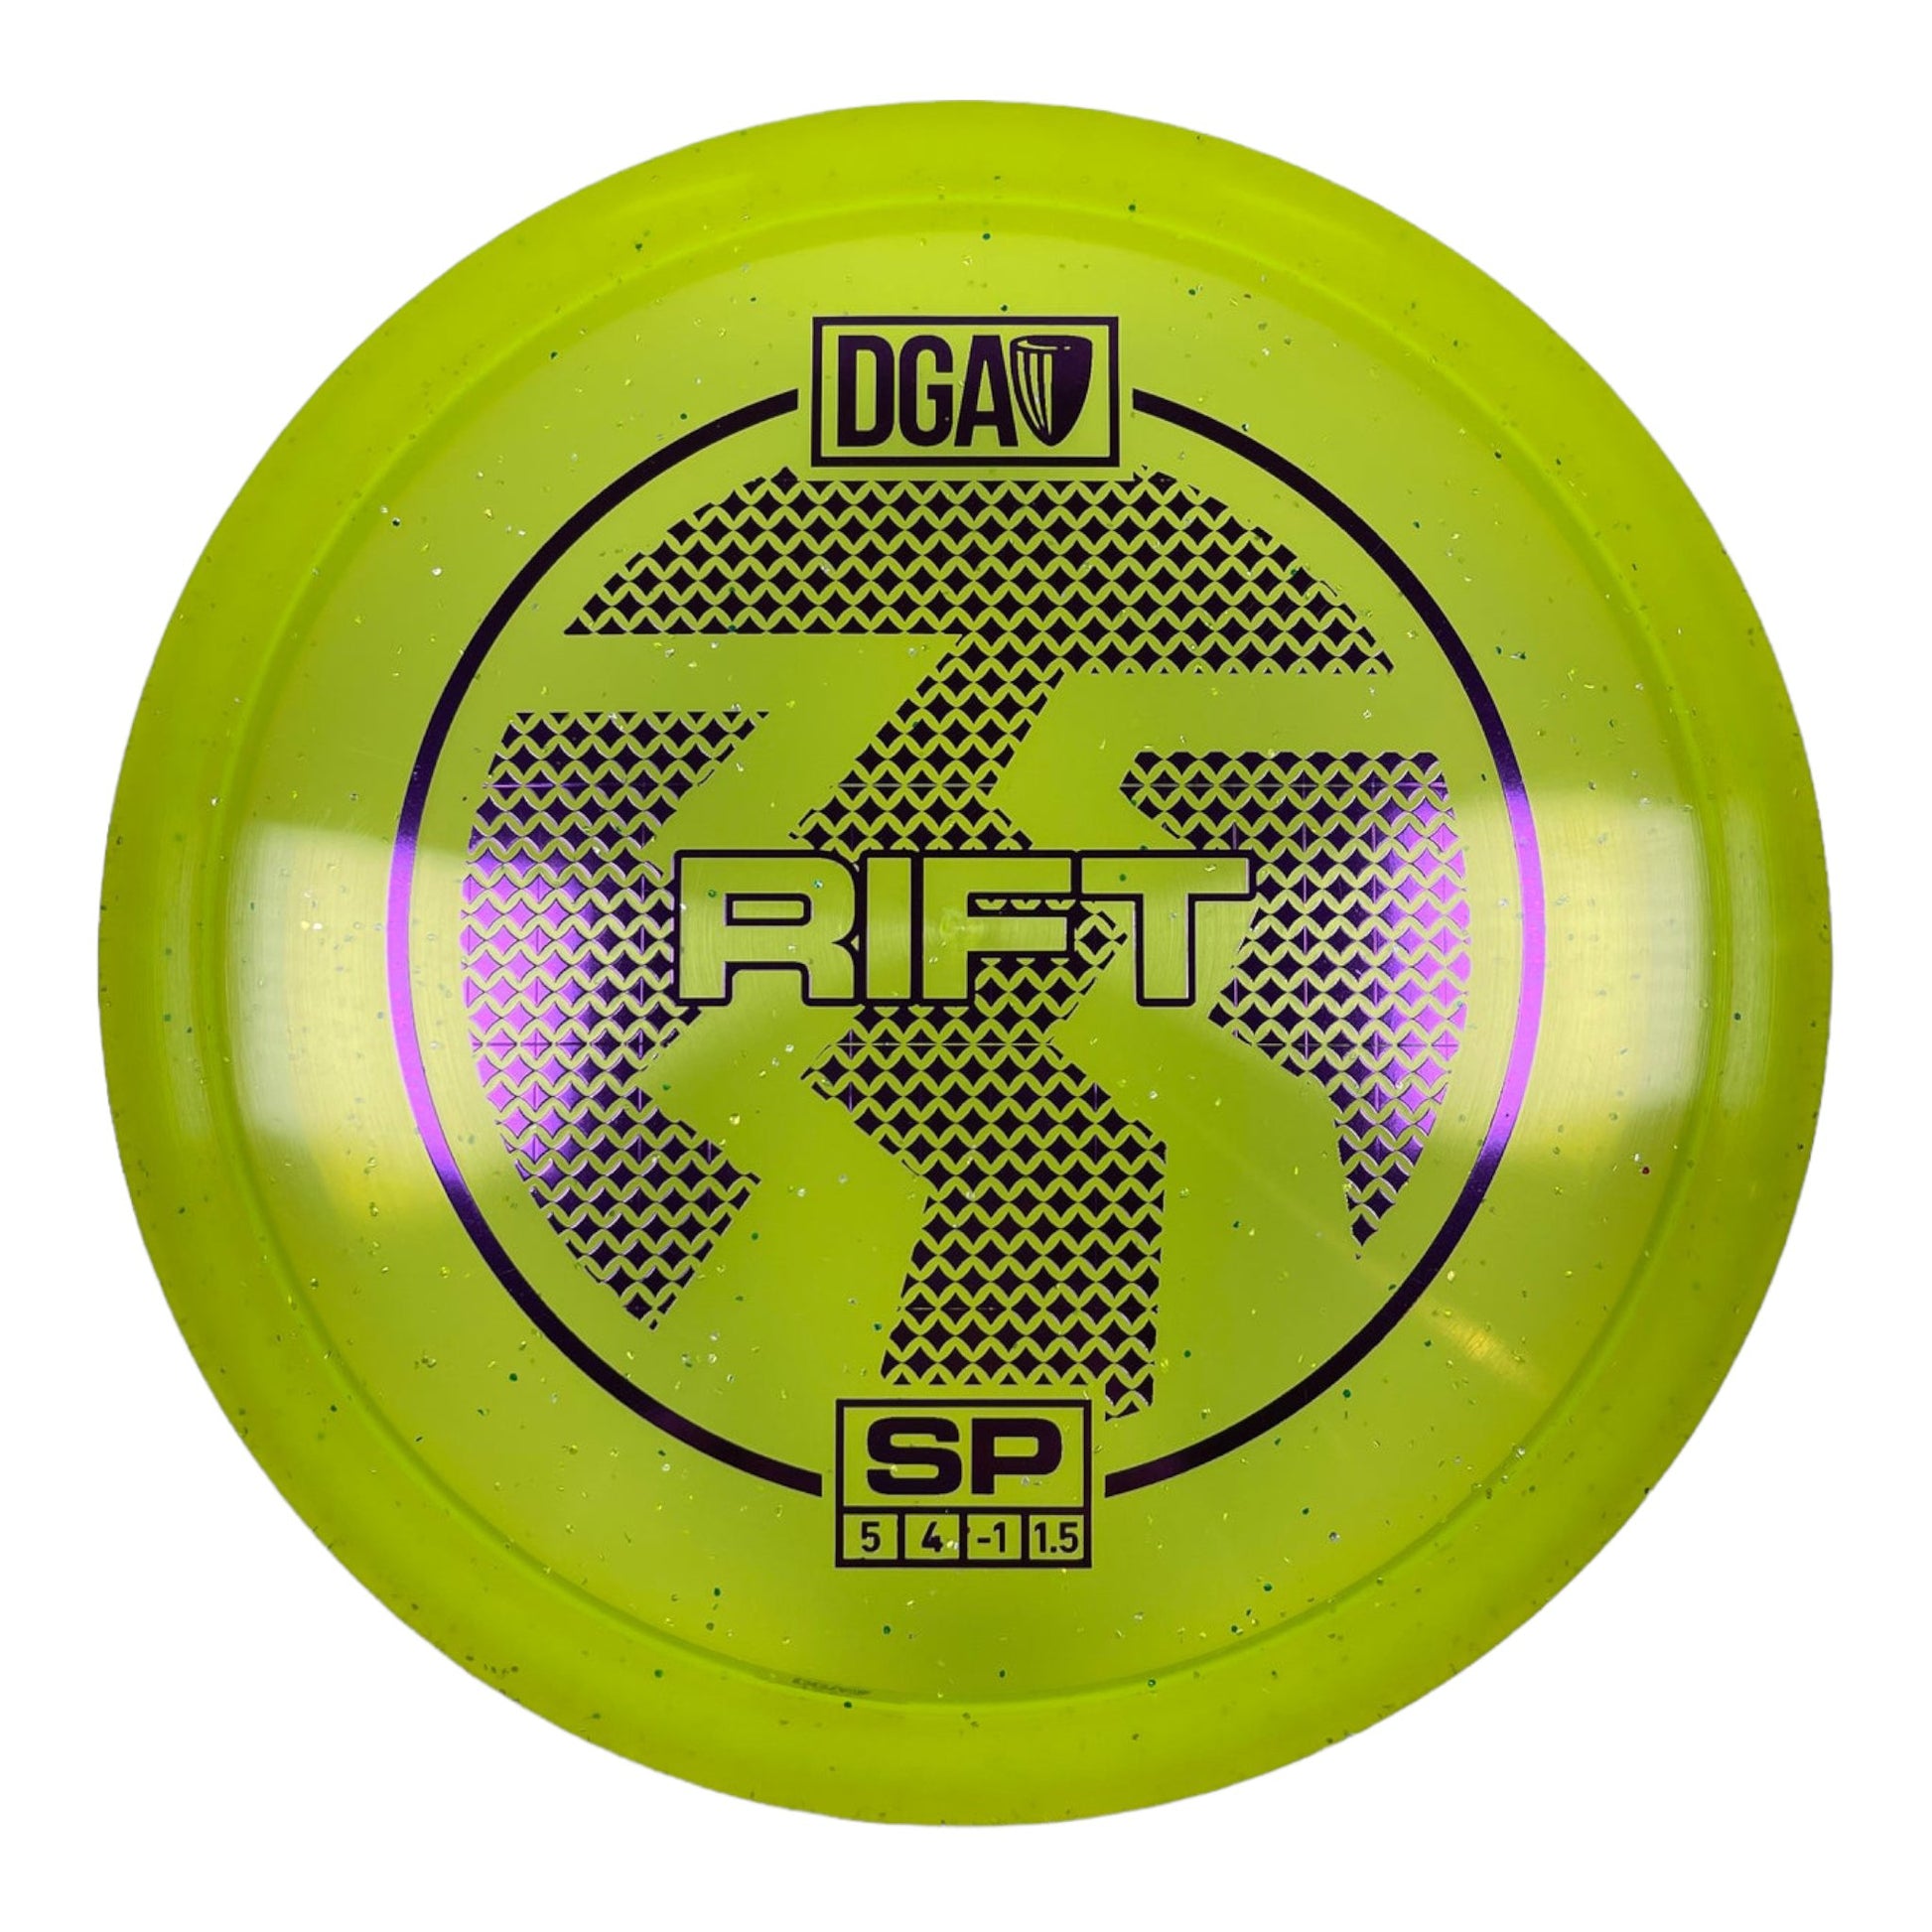 DGA Rift | SP | Yellow/Purple 177g Disc Golf